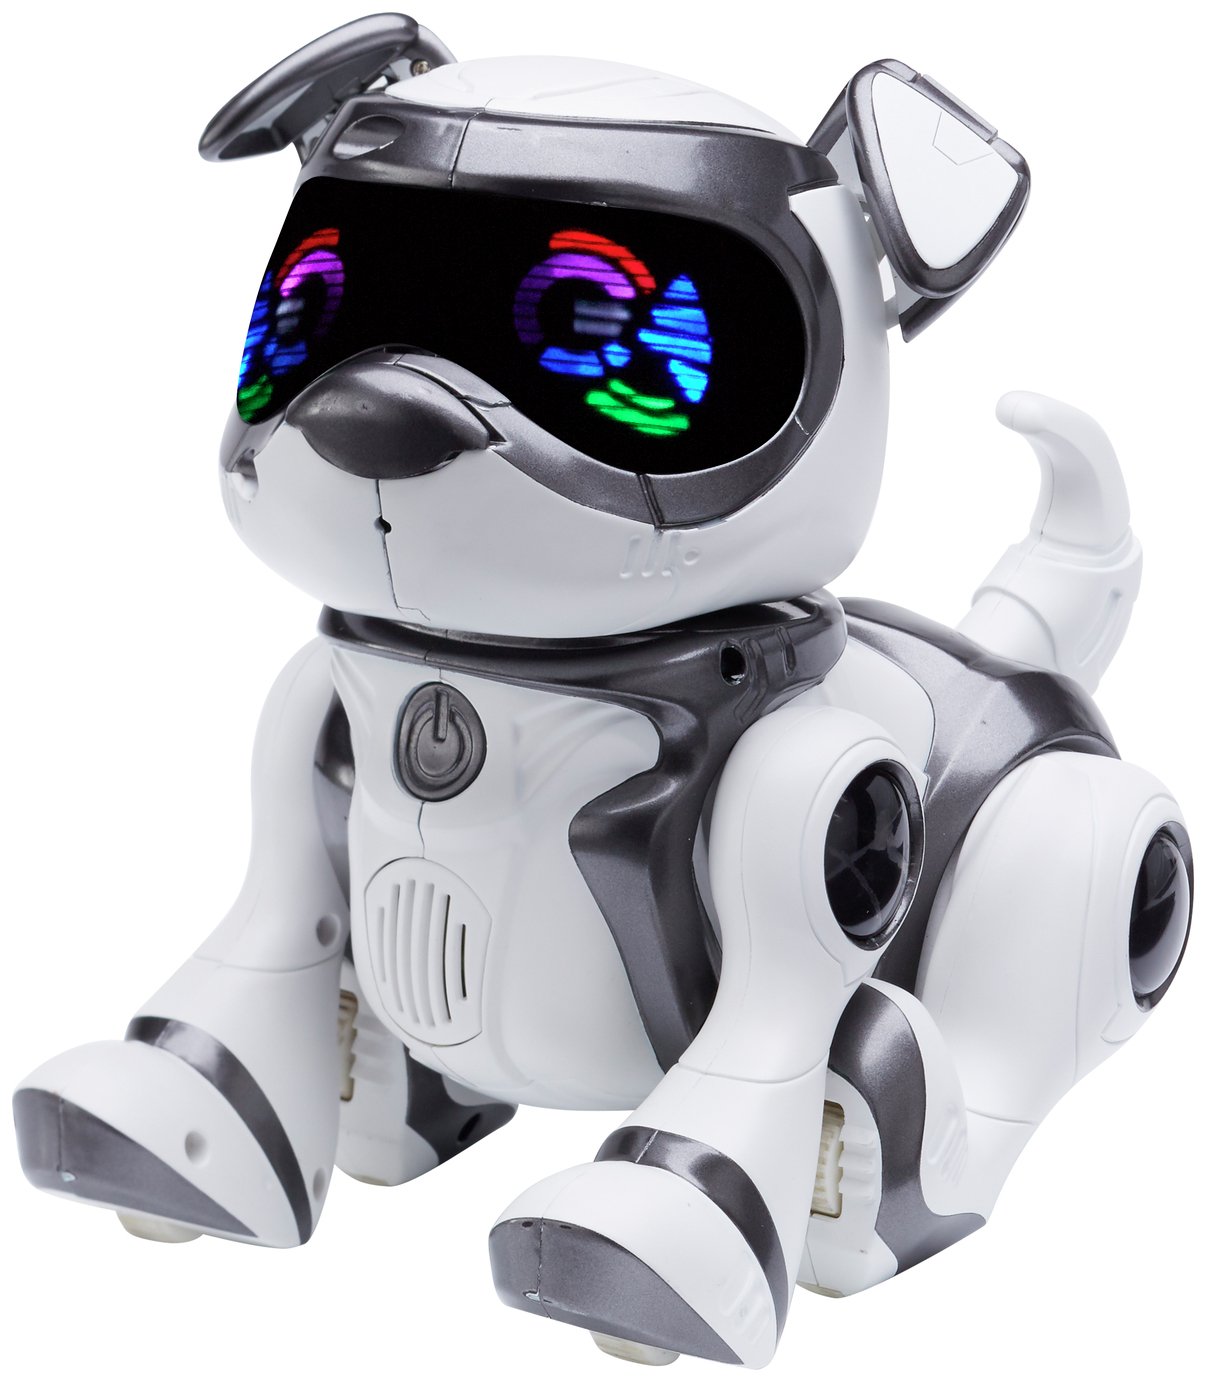 children's toy robots